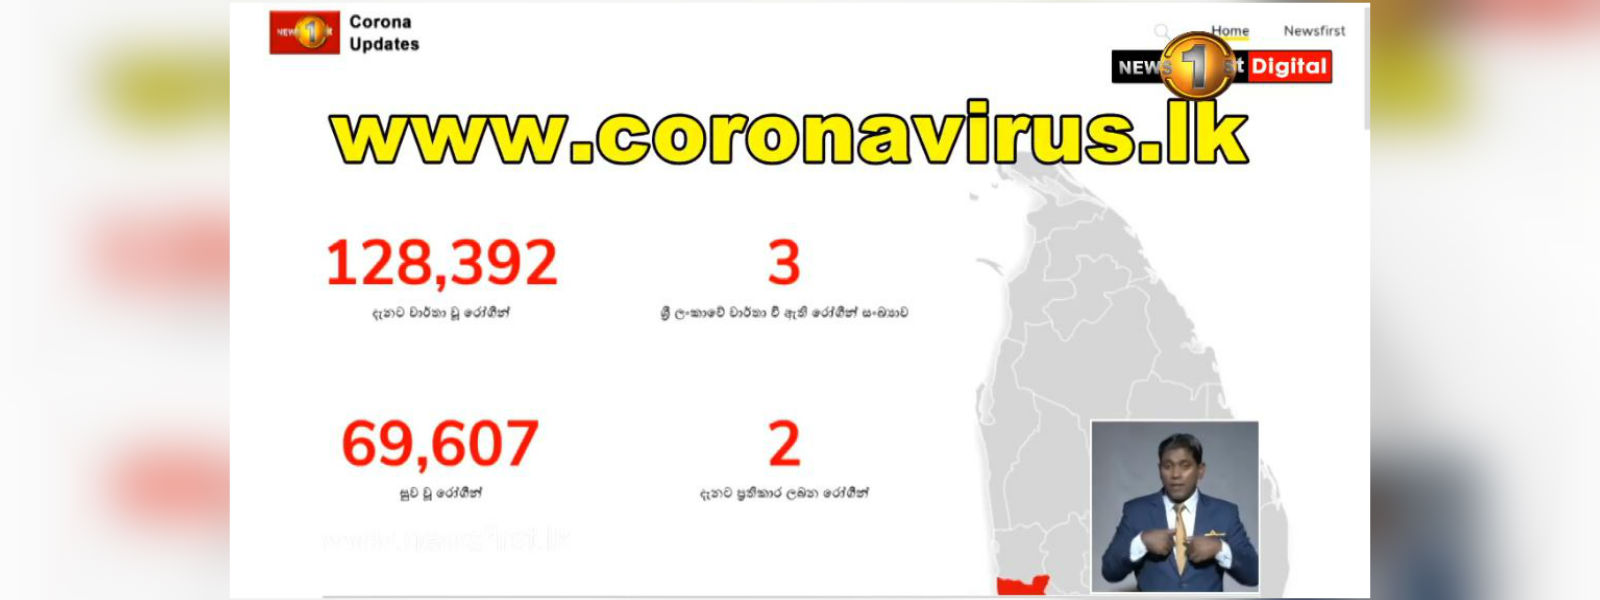 පිවිසෙන්න www.coronavirus.lk වෙත..